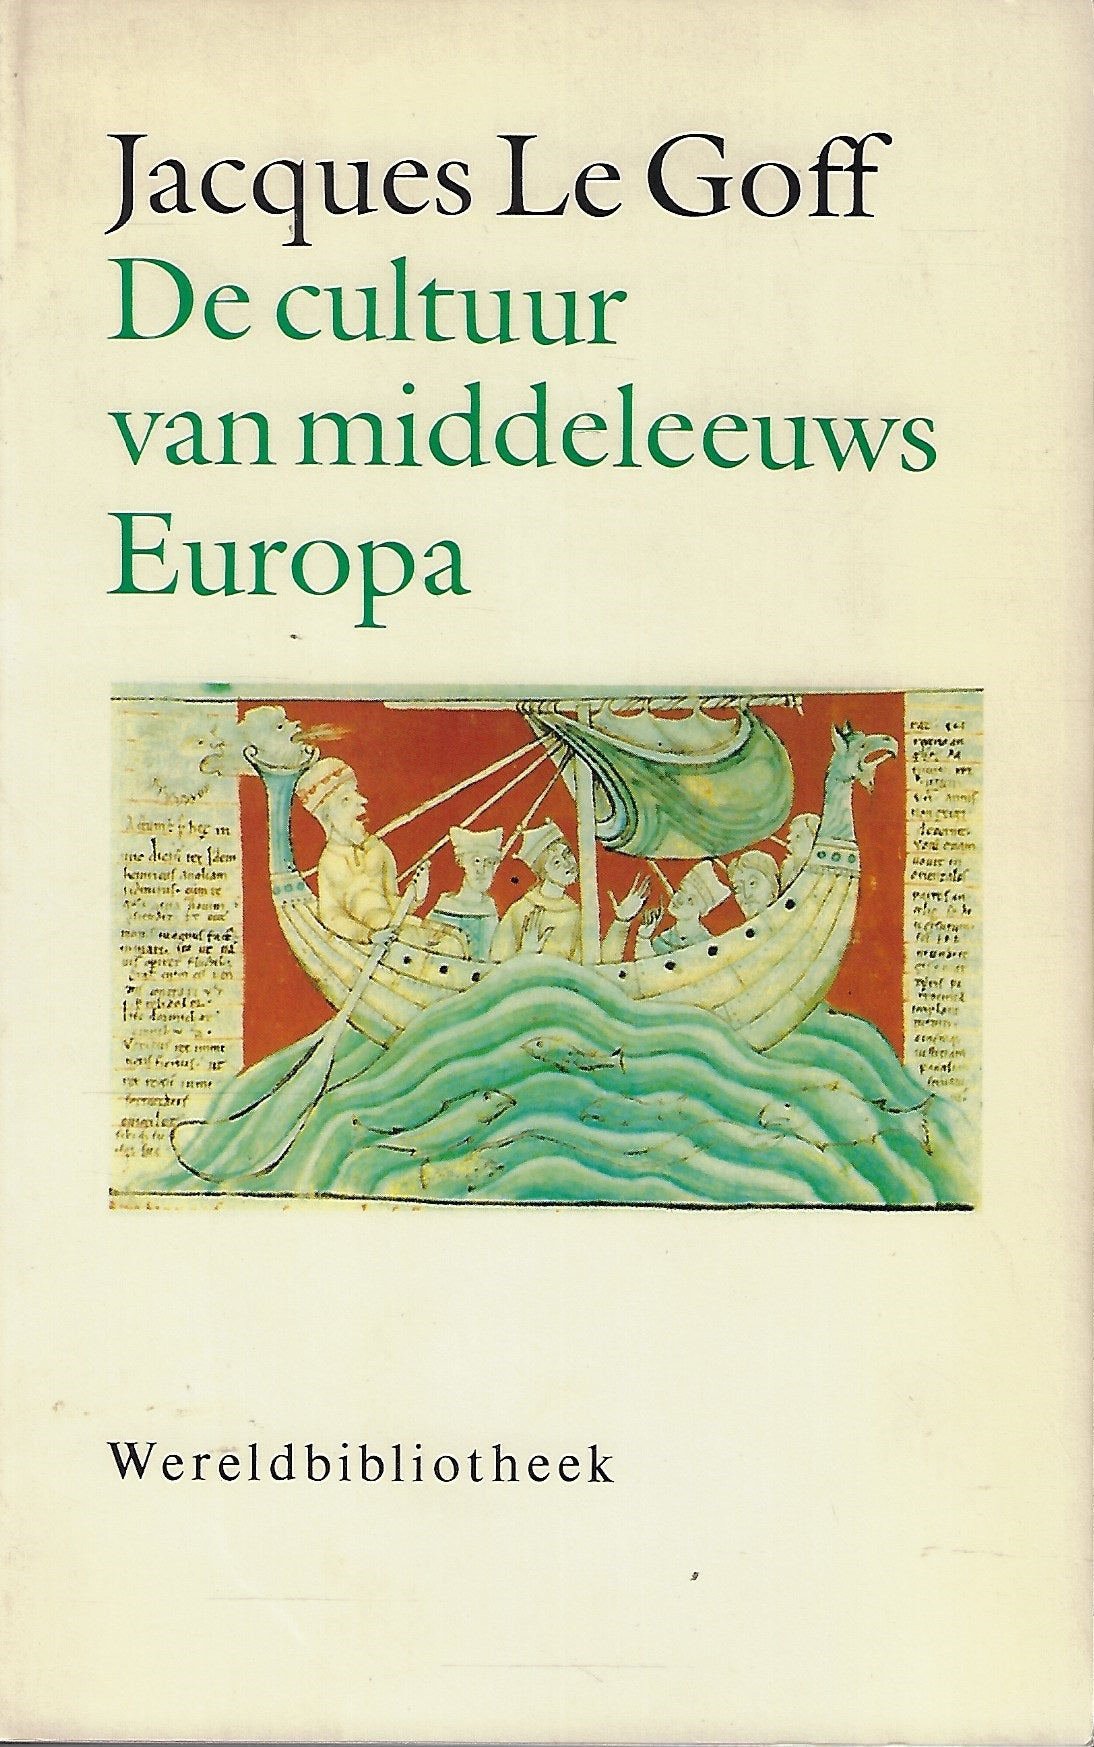 De cultuur van middeleeuws Europa